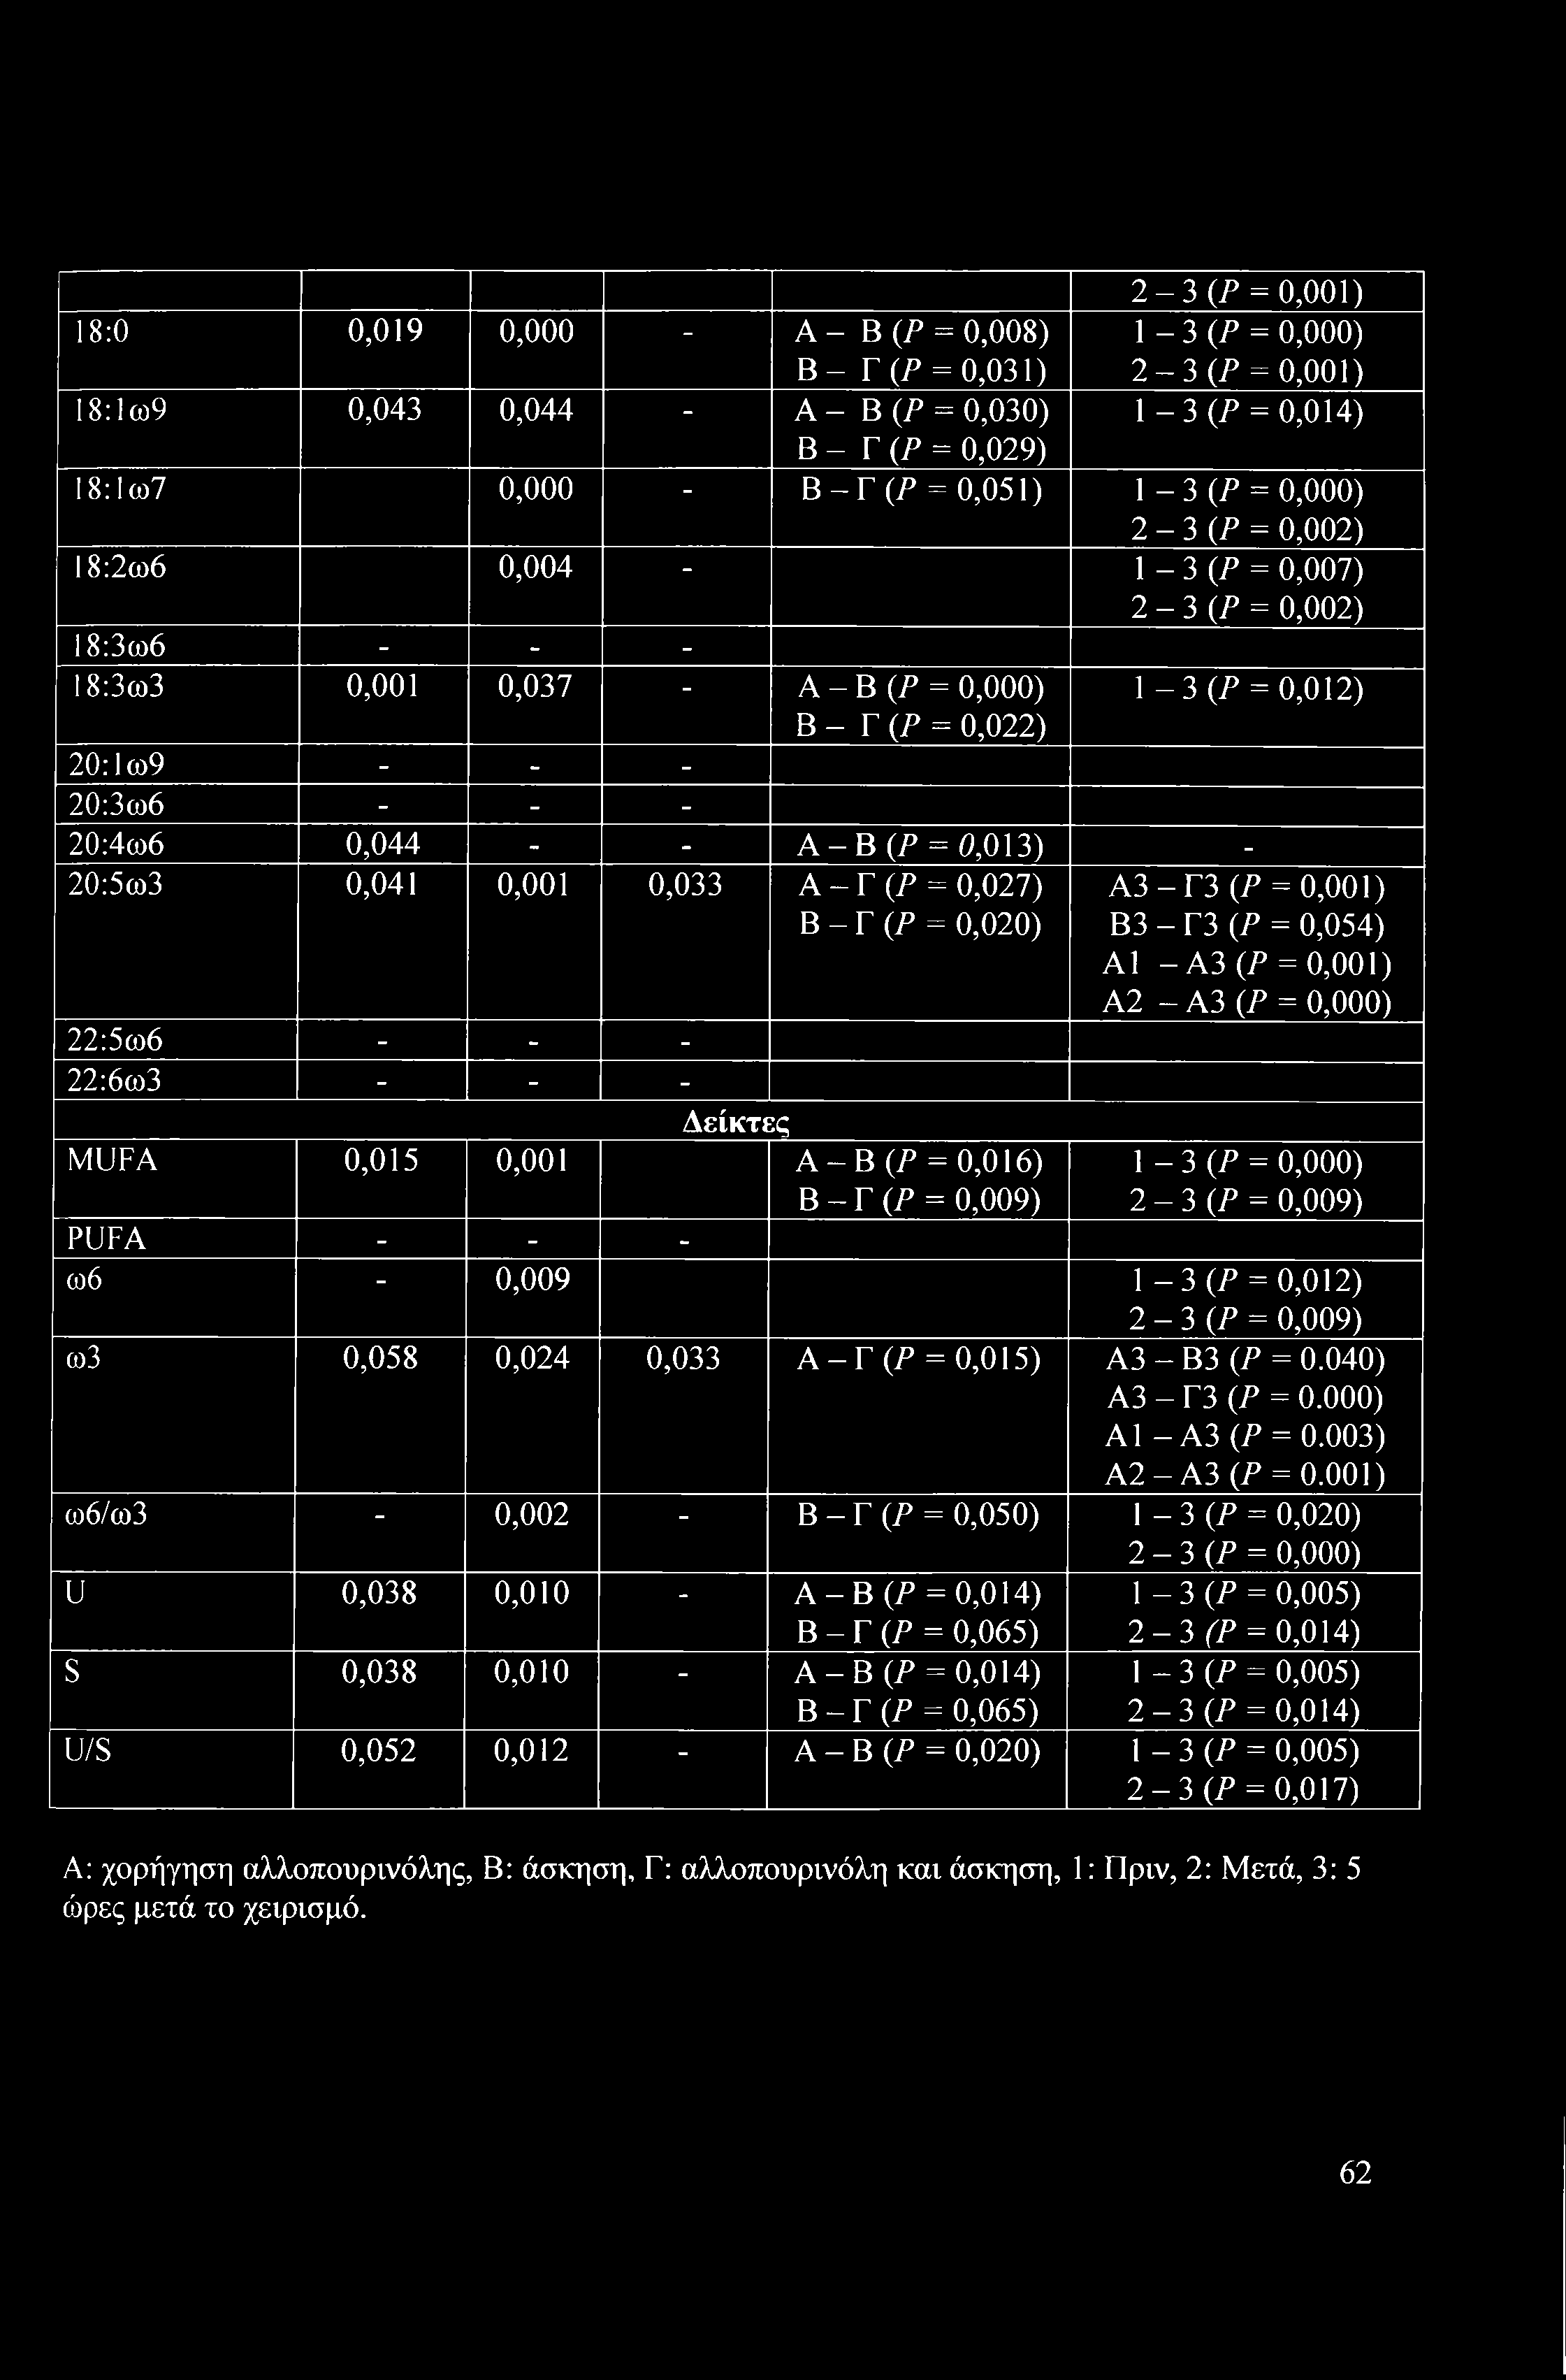 20:4ω6 0,044 - - Α-Β(Ρ = 0,013) - 20:5ω3 0,041 0,001 0,033 A - Γ (Ρ = 0,027) Β - Γ (Ρ = 0,020) 22:5ω6 - - - 22:6ω3 - - - Δείκτες MUFA 0,015 0,001 Α-Β(Ρ = 0,016) Β - Γ (Ρ = 0,009) Α3-Γ3 (Ρ = 0,001) Β3